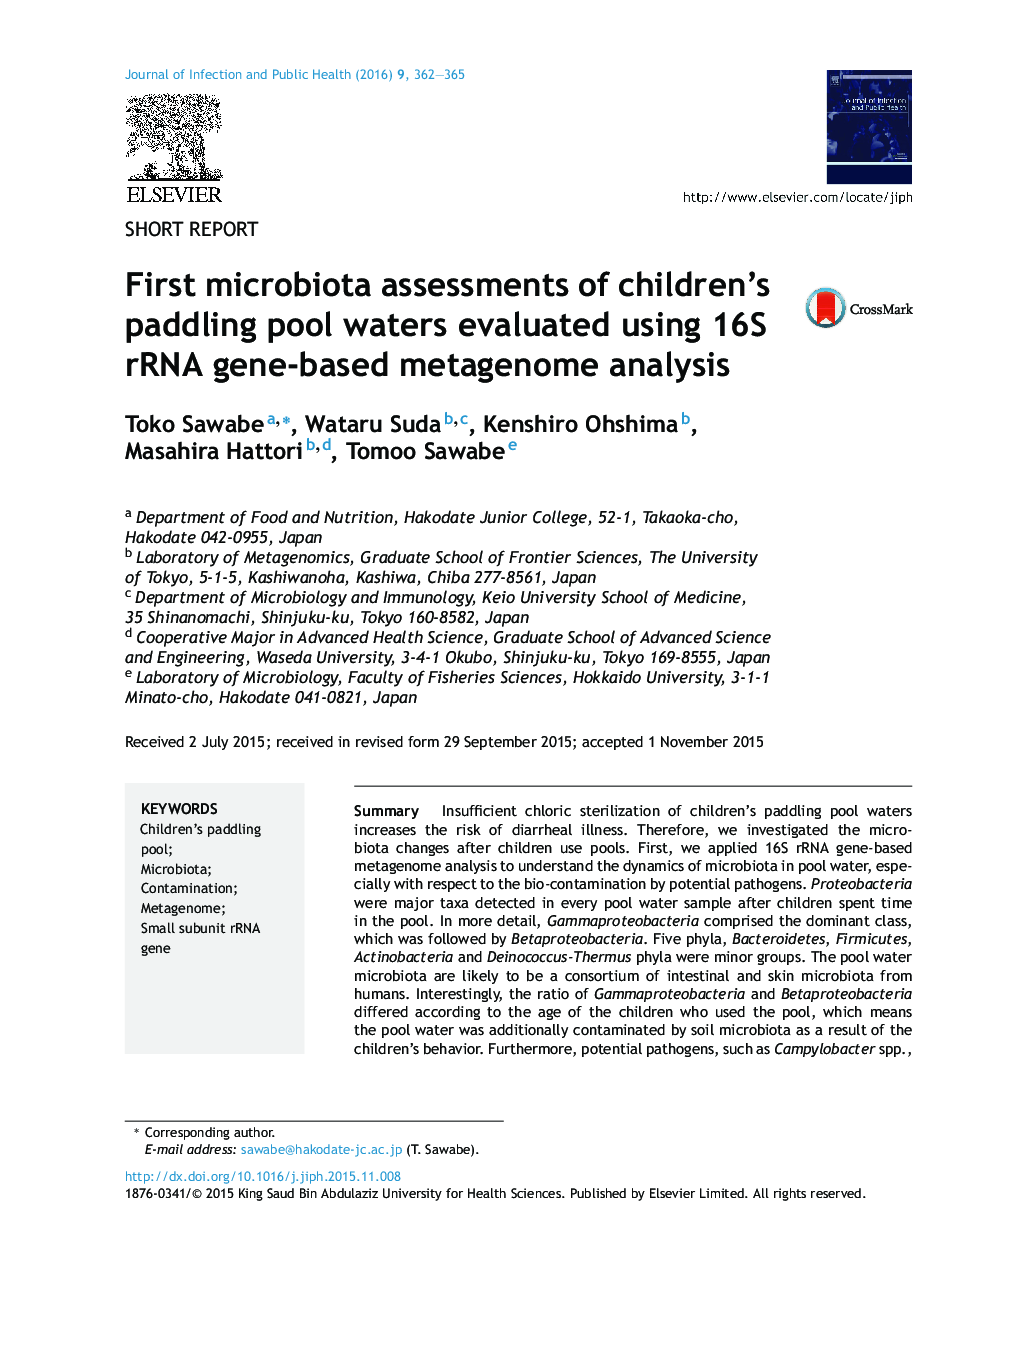 ارزیابی میکروبی اول از آب های استخر مخصوص کودکان ارزیابی شده با استفاده از تجزیه و تحلیل متاژنوم مبتنی بر ژن 16S rRNA 